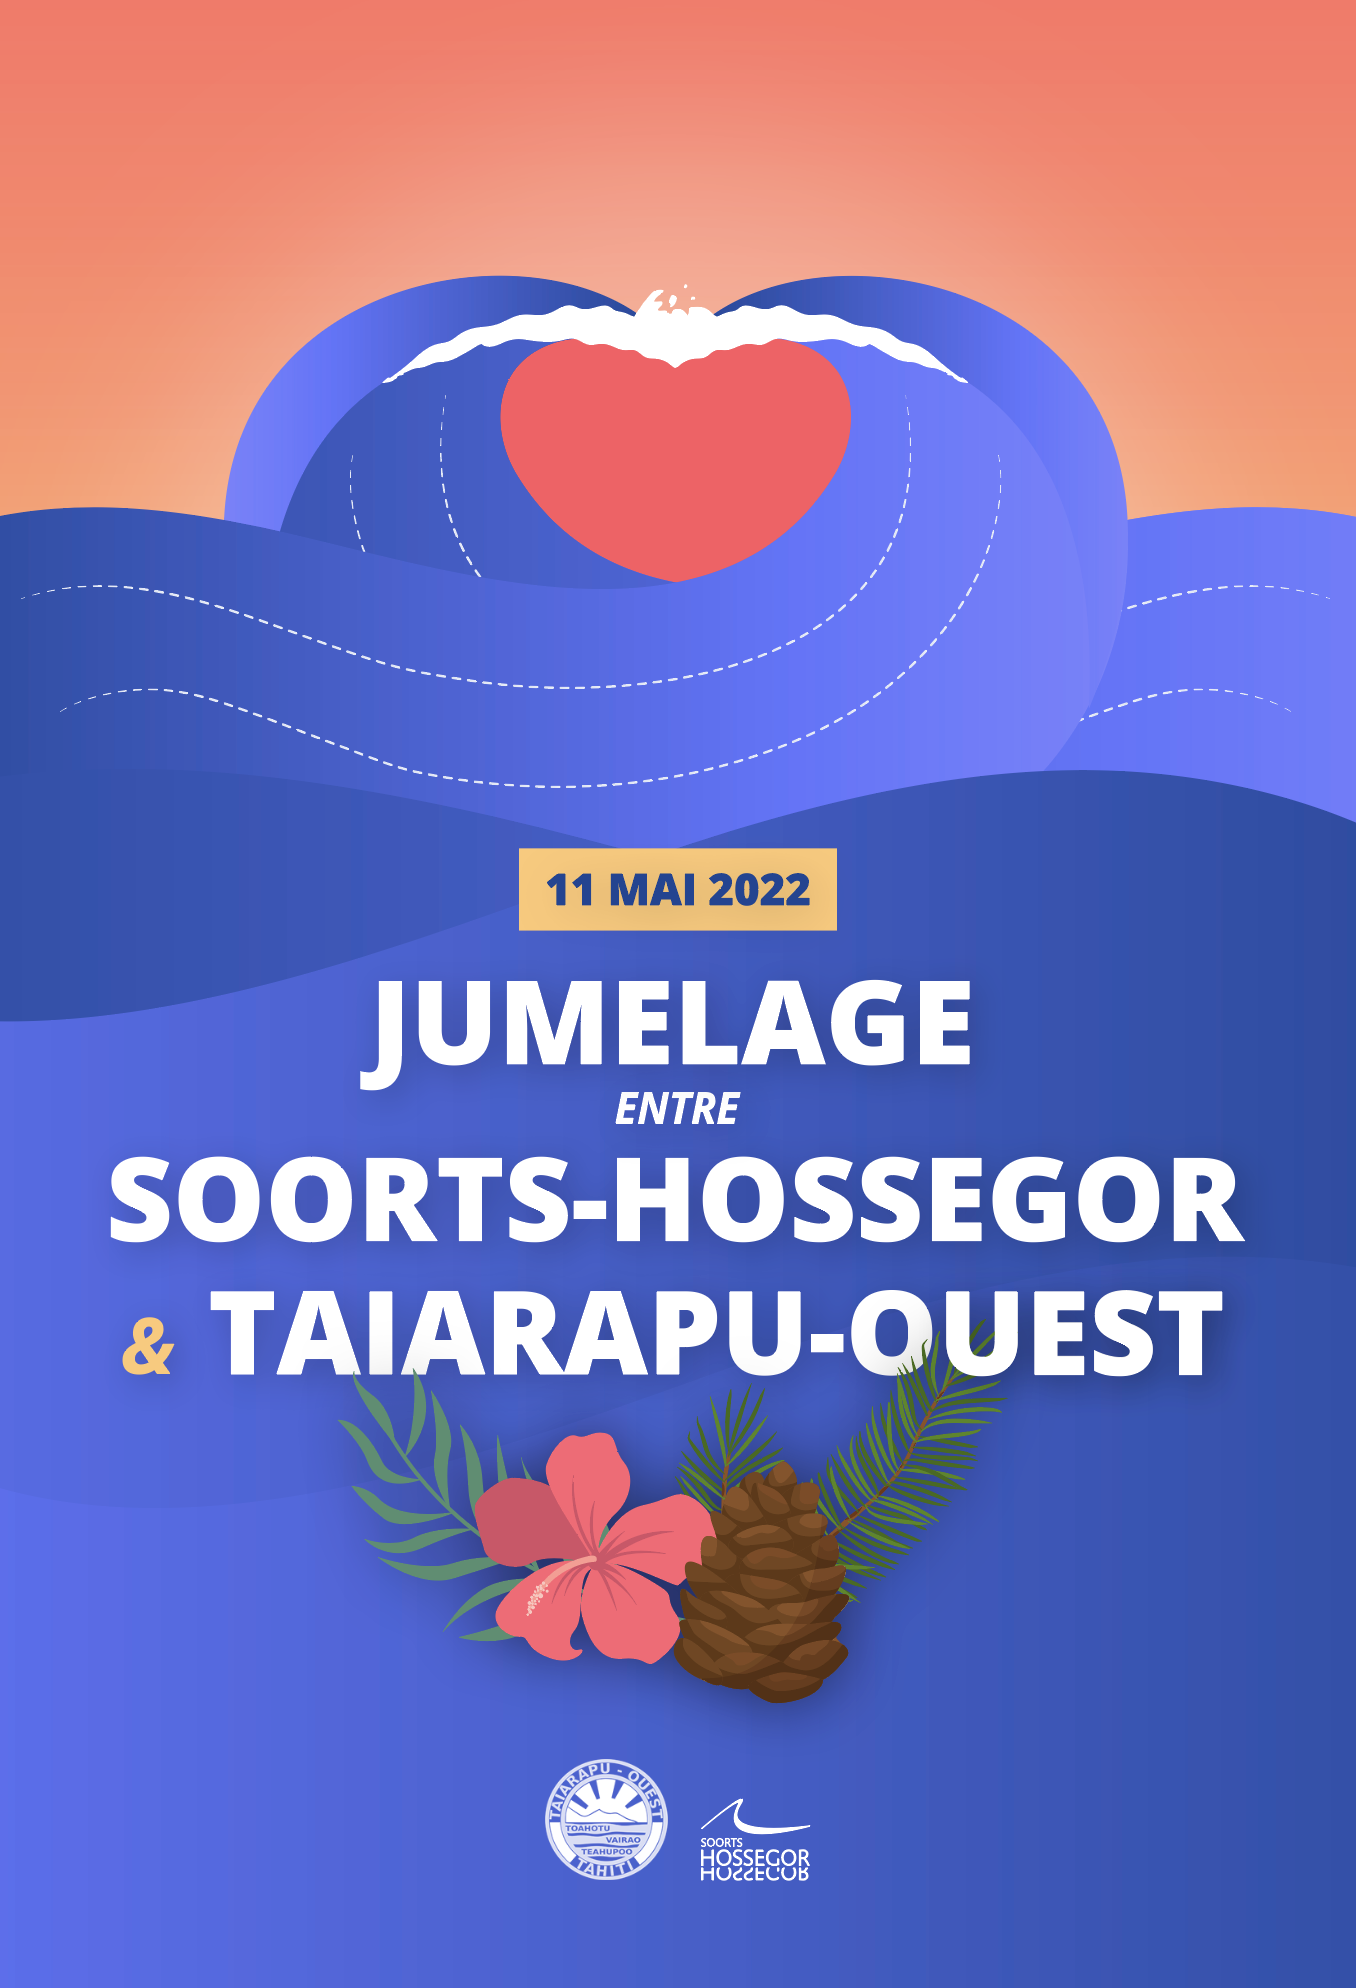 Jumelage Soorts-Hossegor et Taiarapu-Ouest